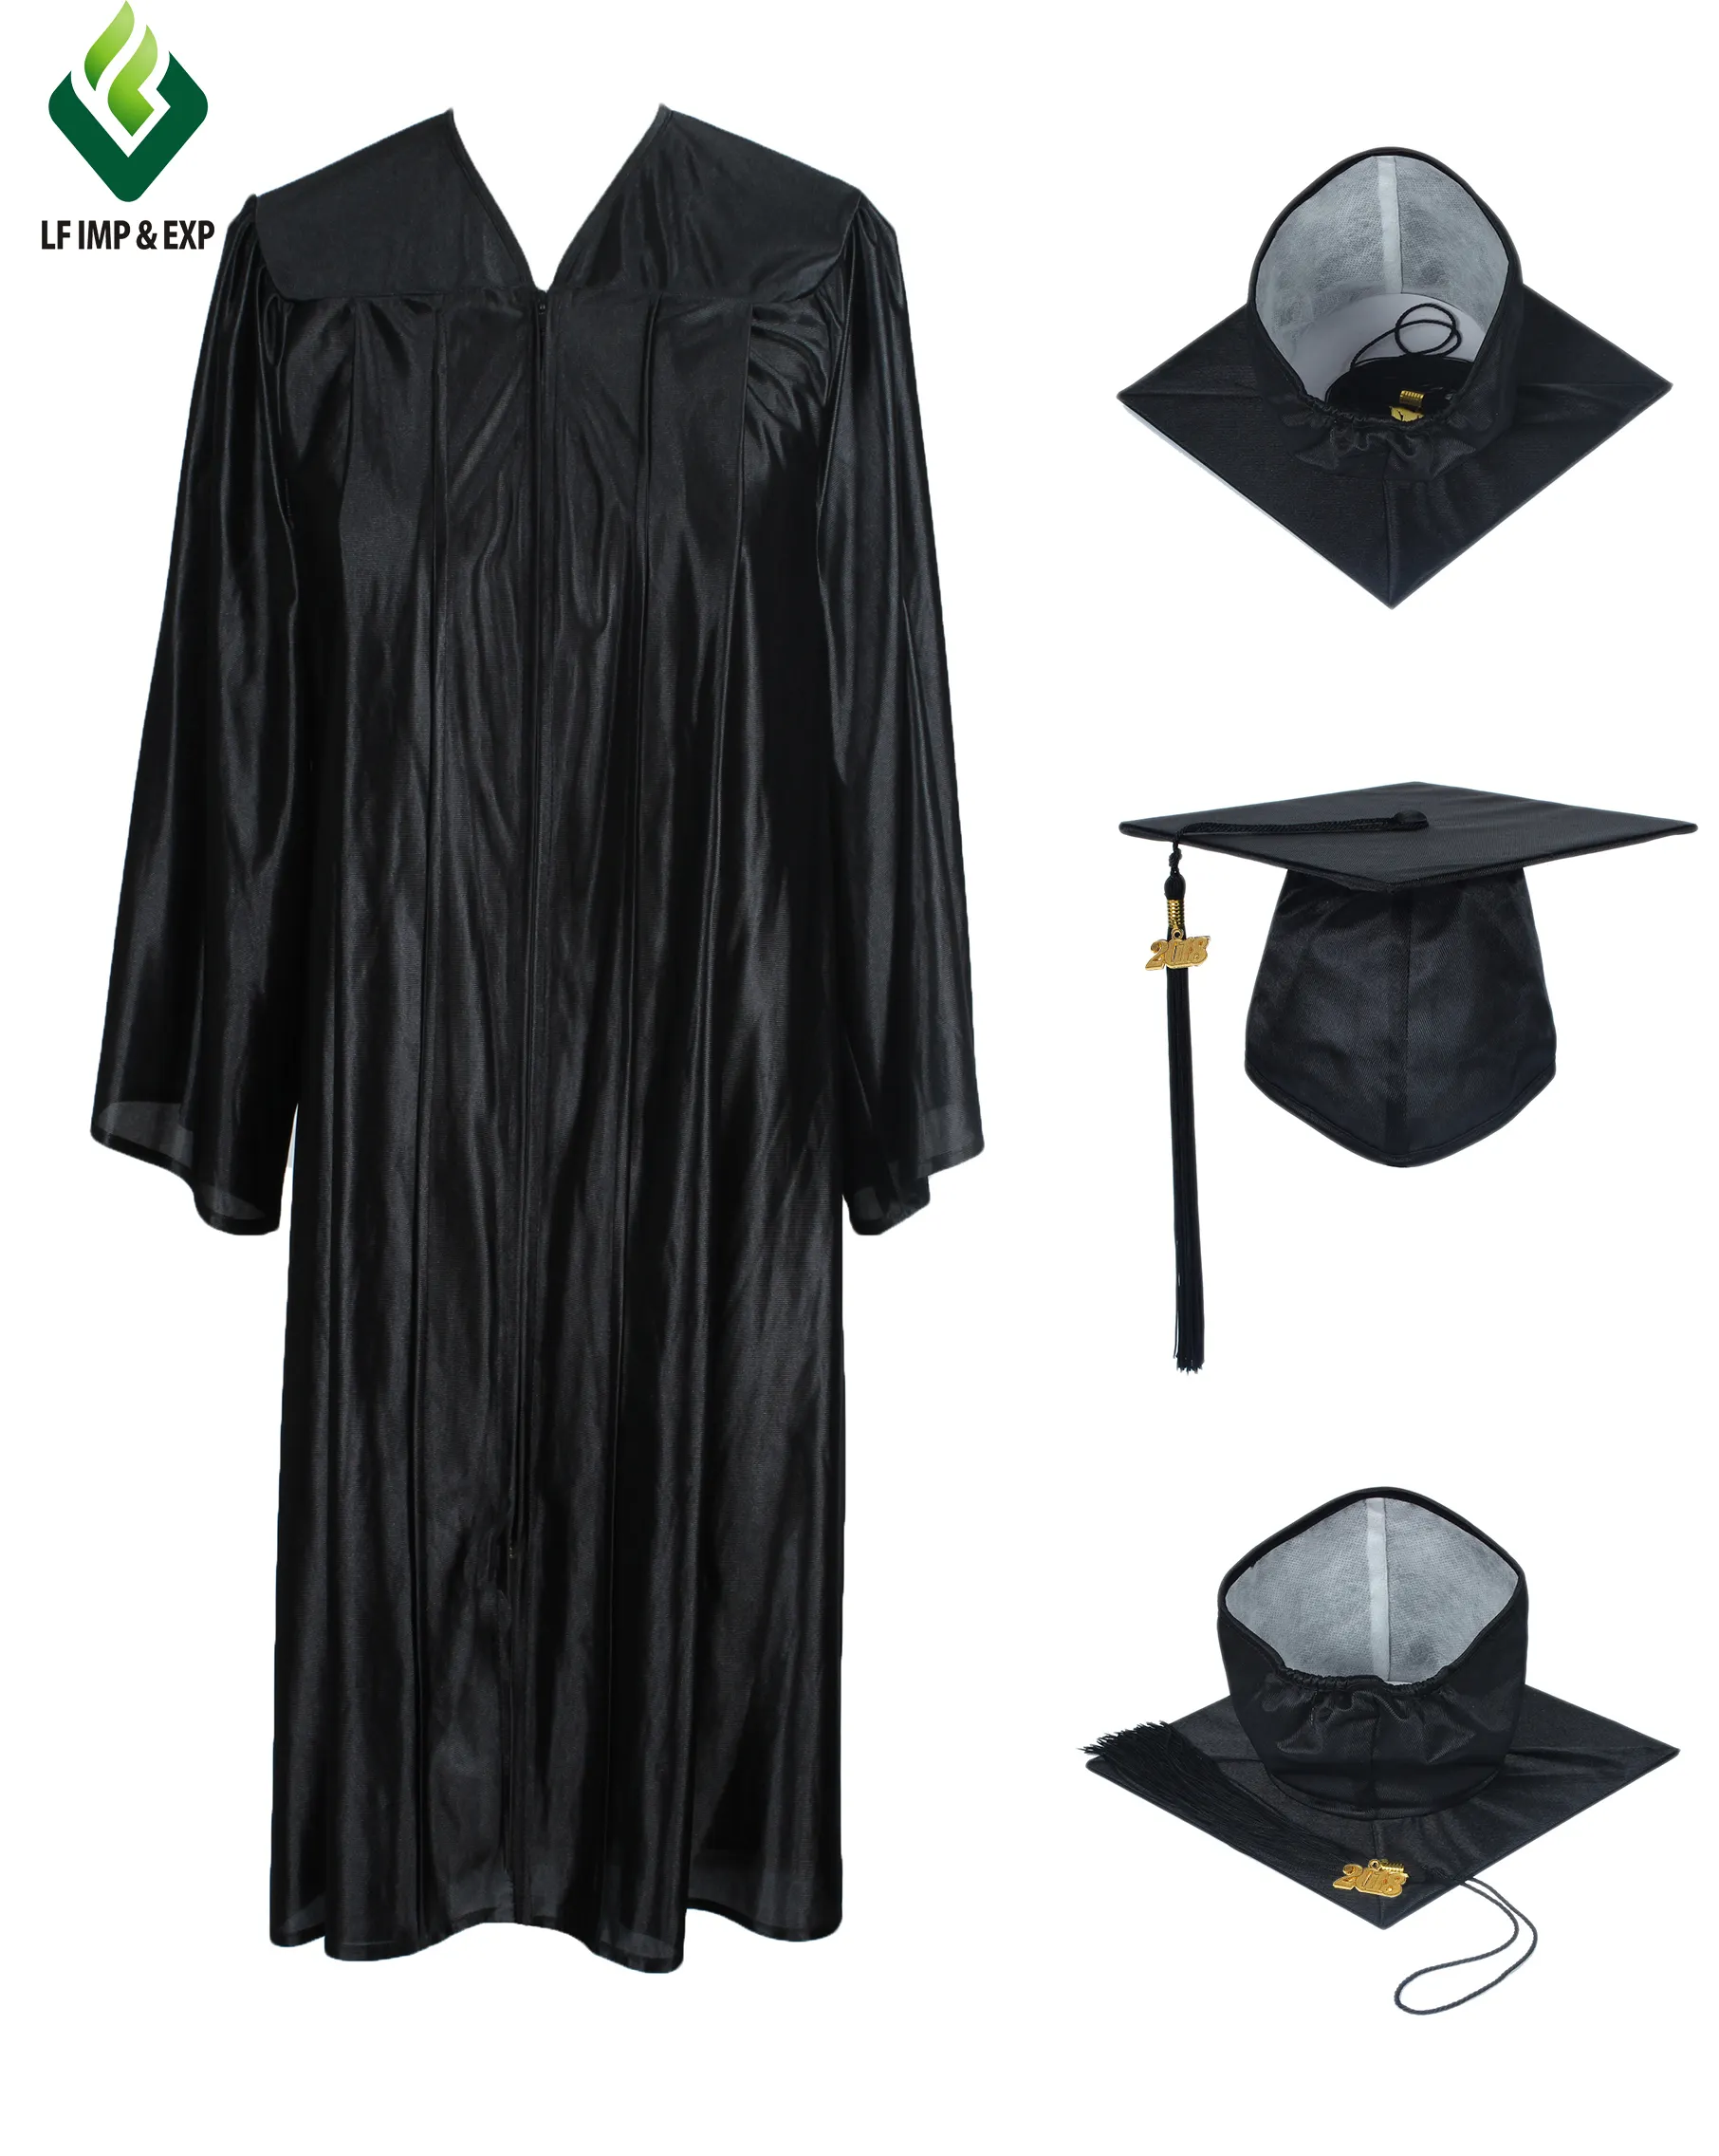 Venta al por mayor de graduación vestido incluyendo vestido sombrero borla de la graduación vestido adulto vestido de graduación de